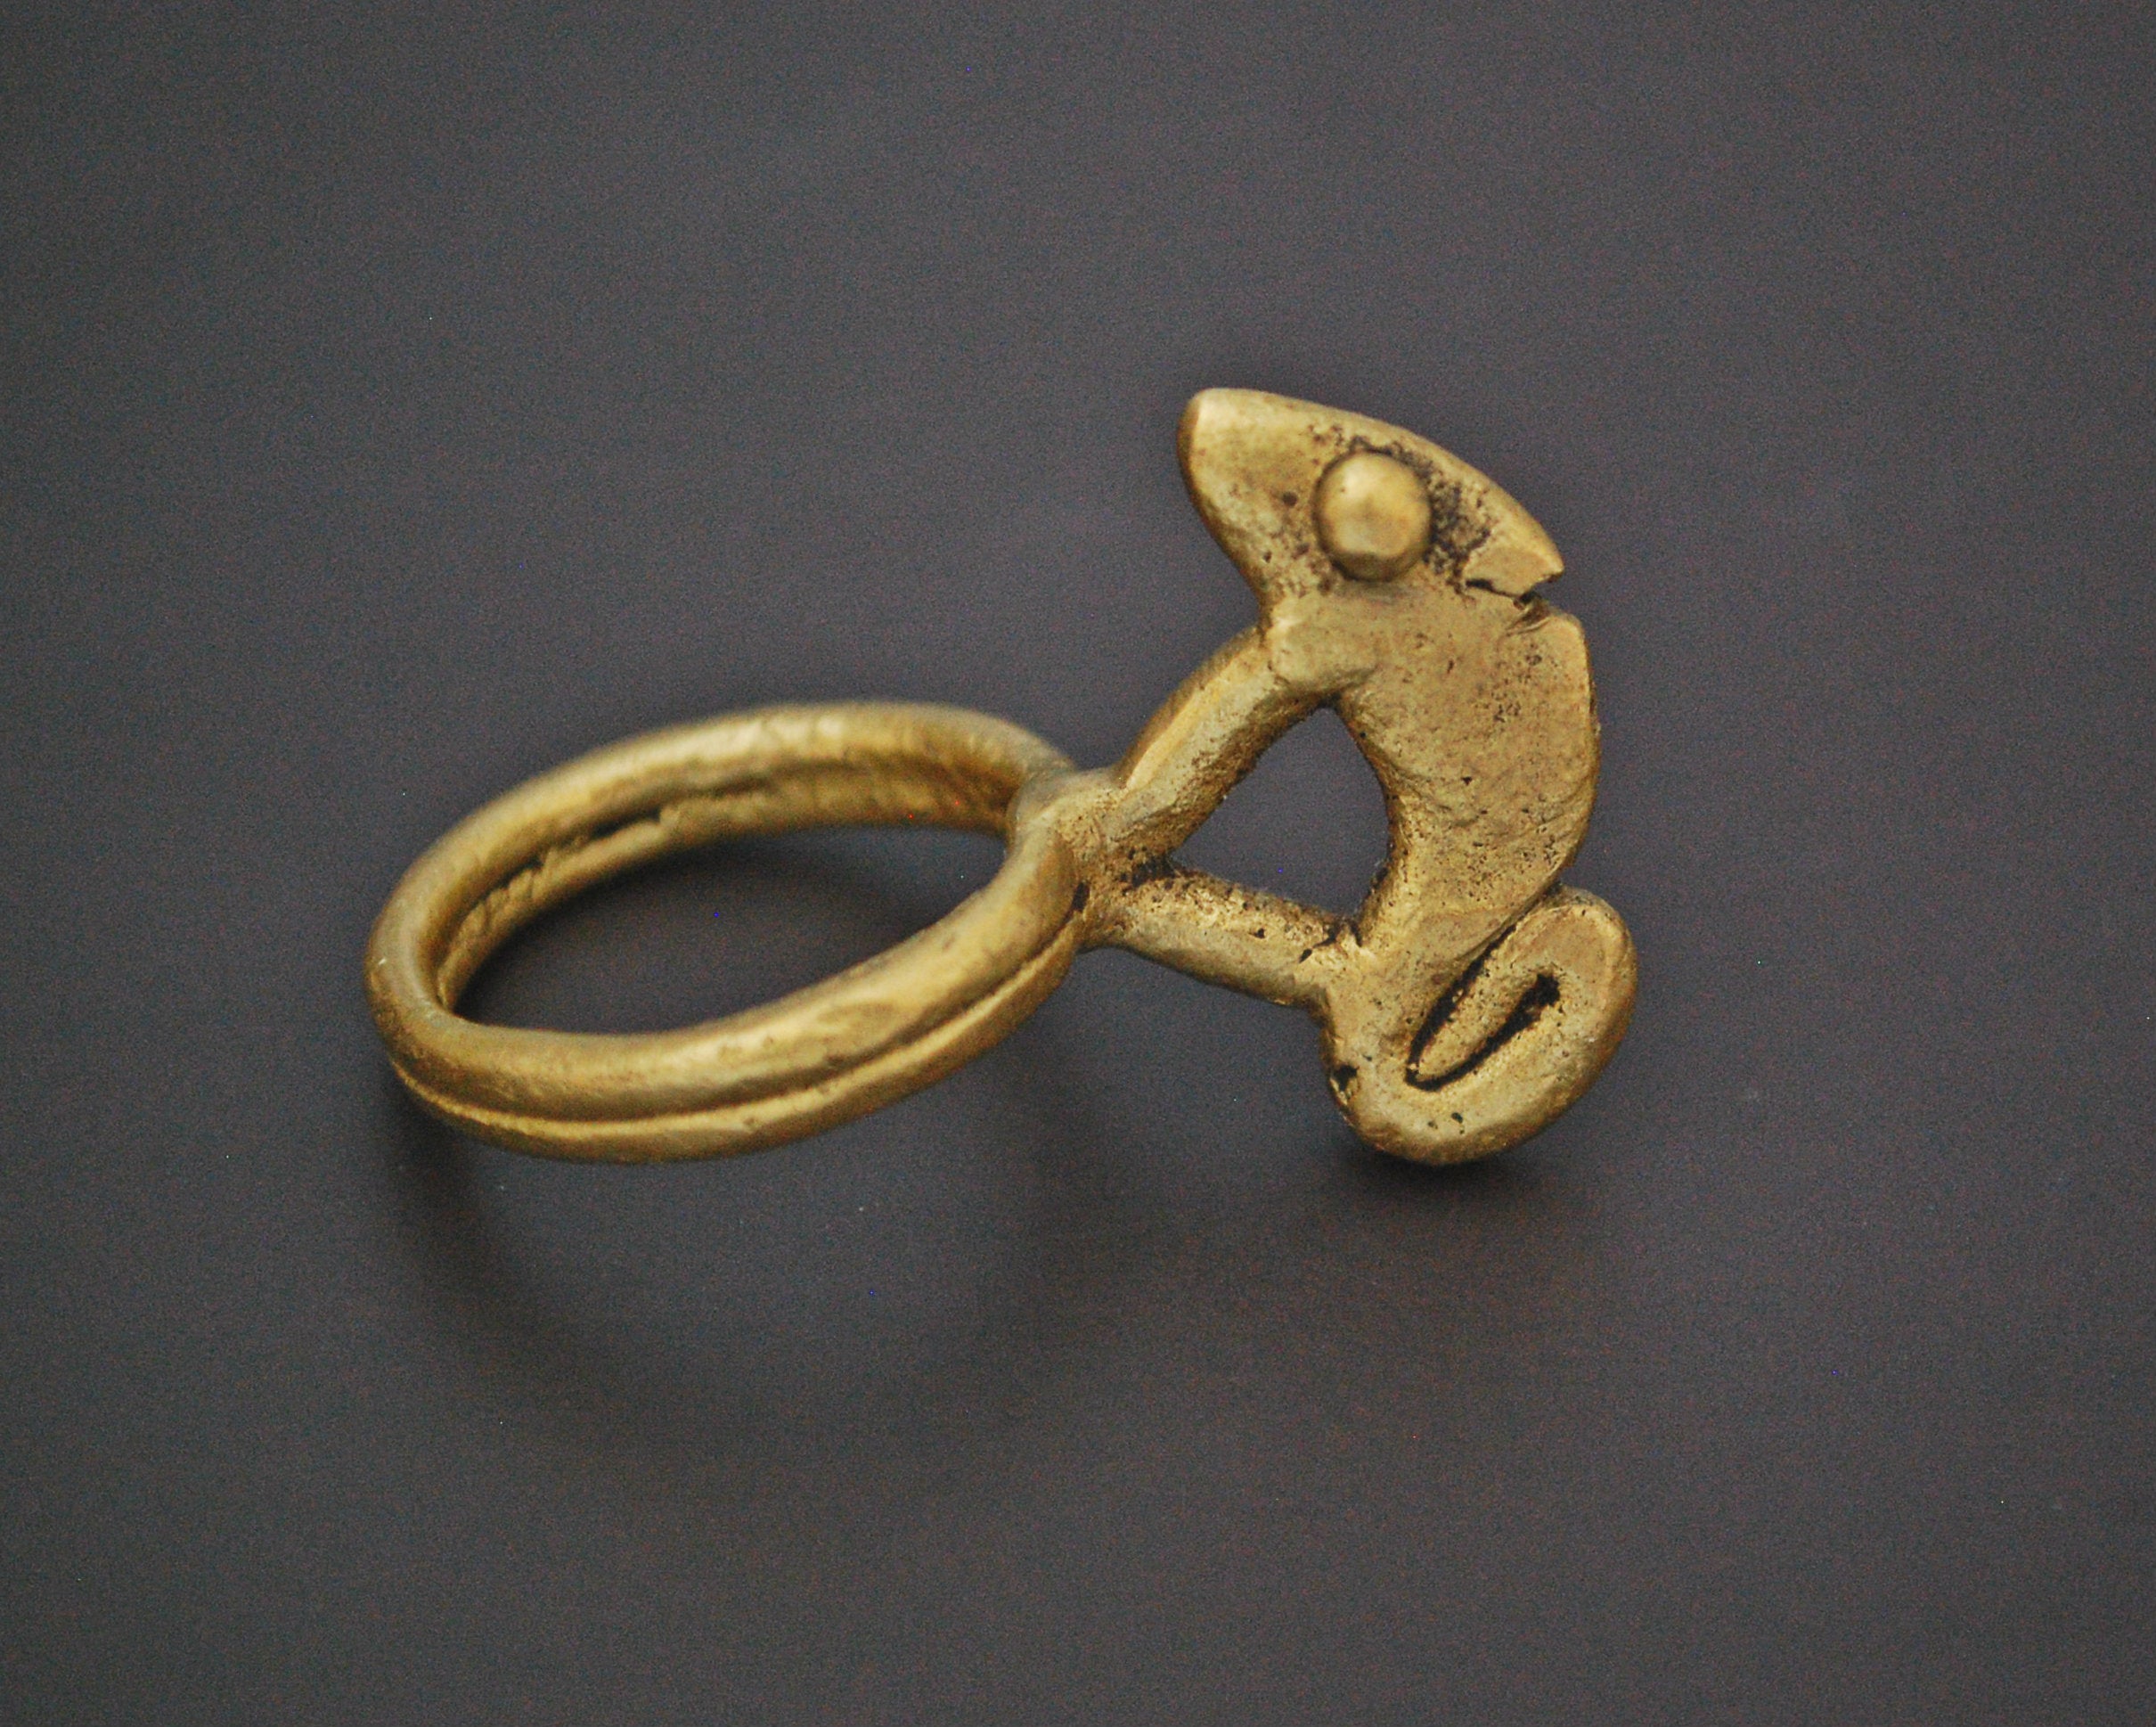 Old Lobi Chameleon Brass Ring - Size 8.75